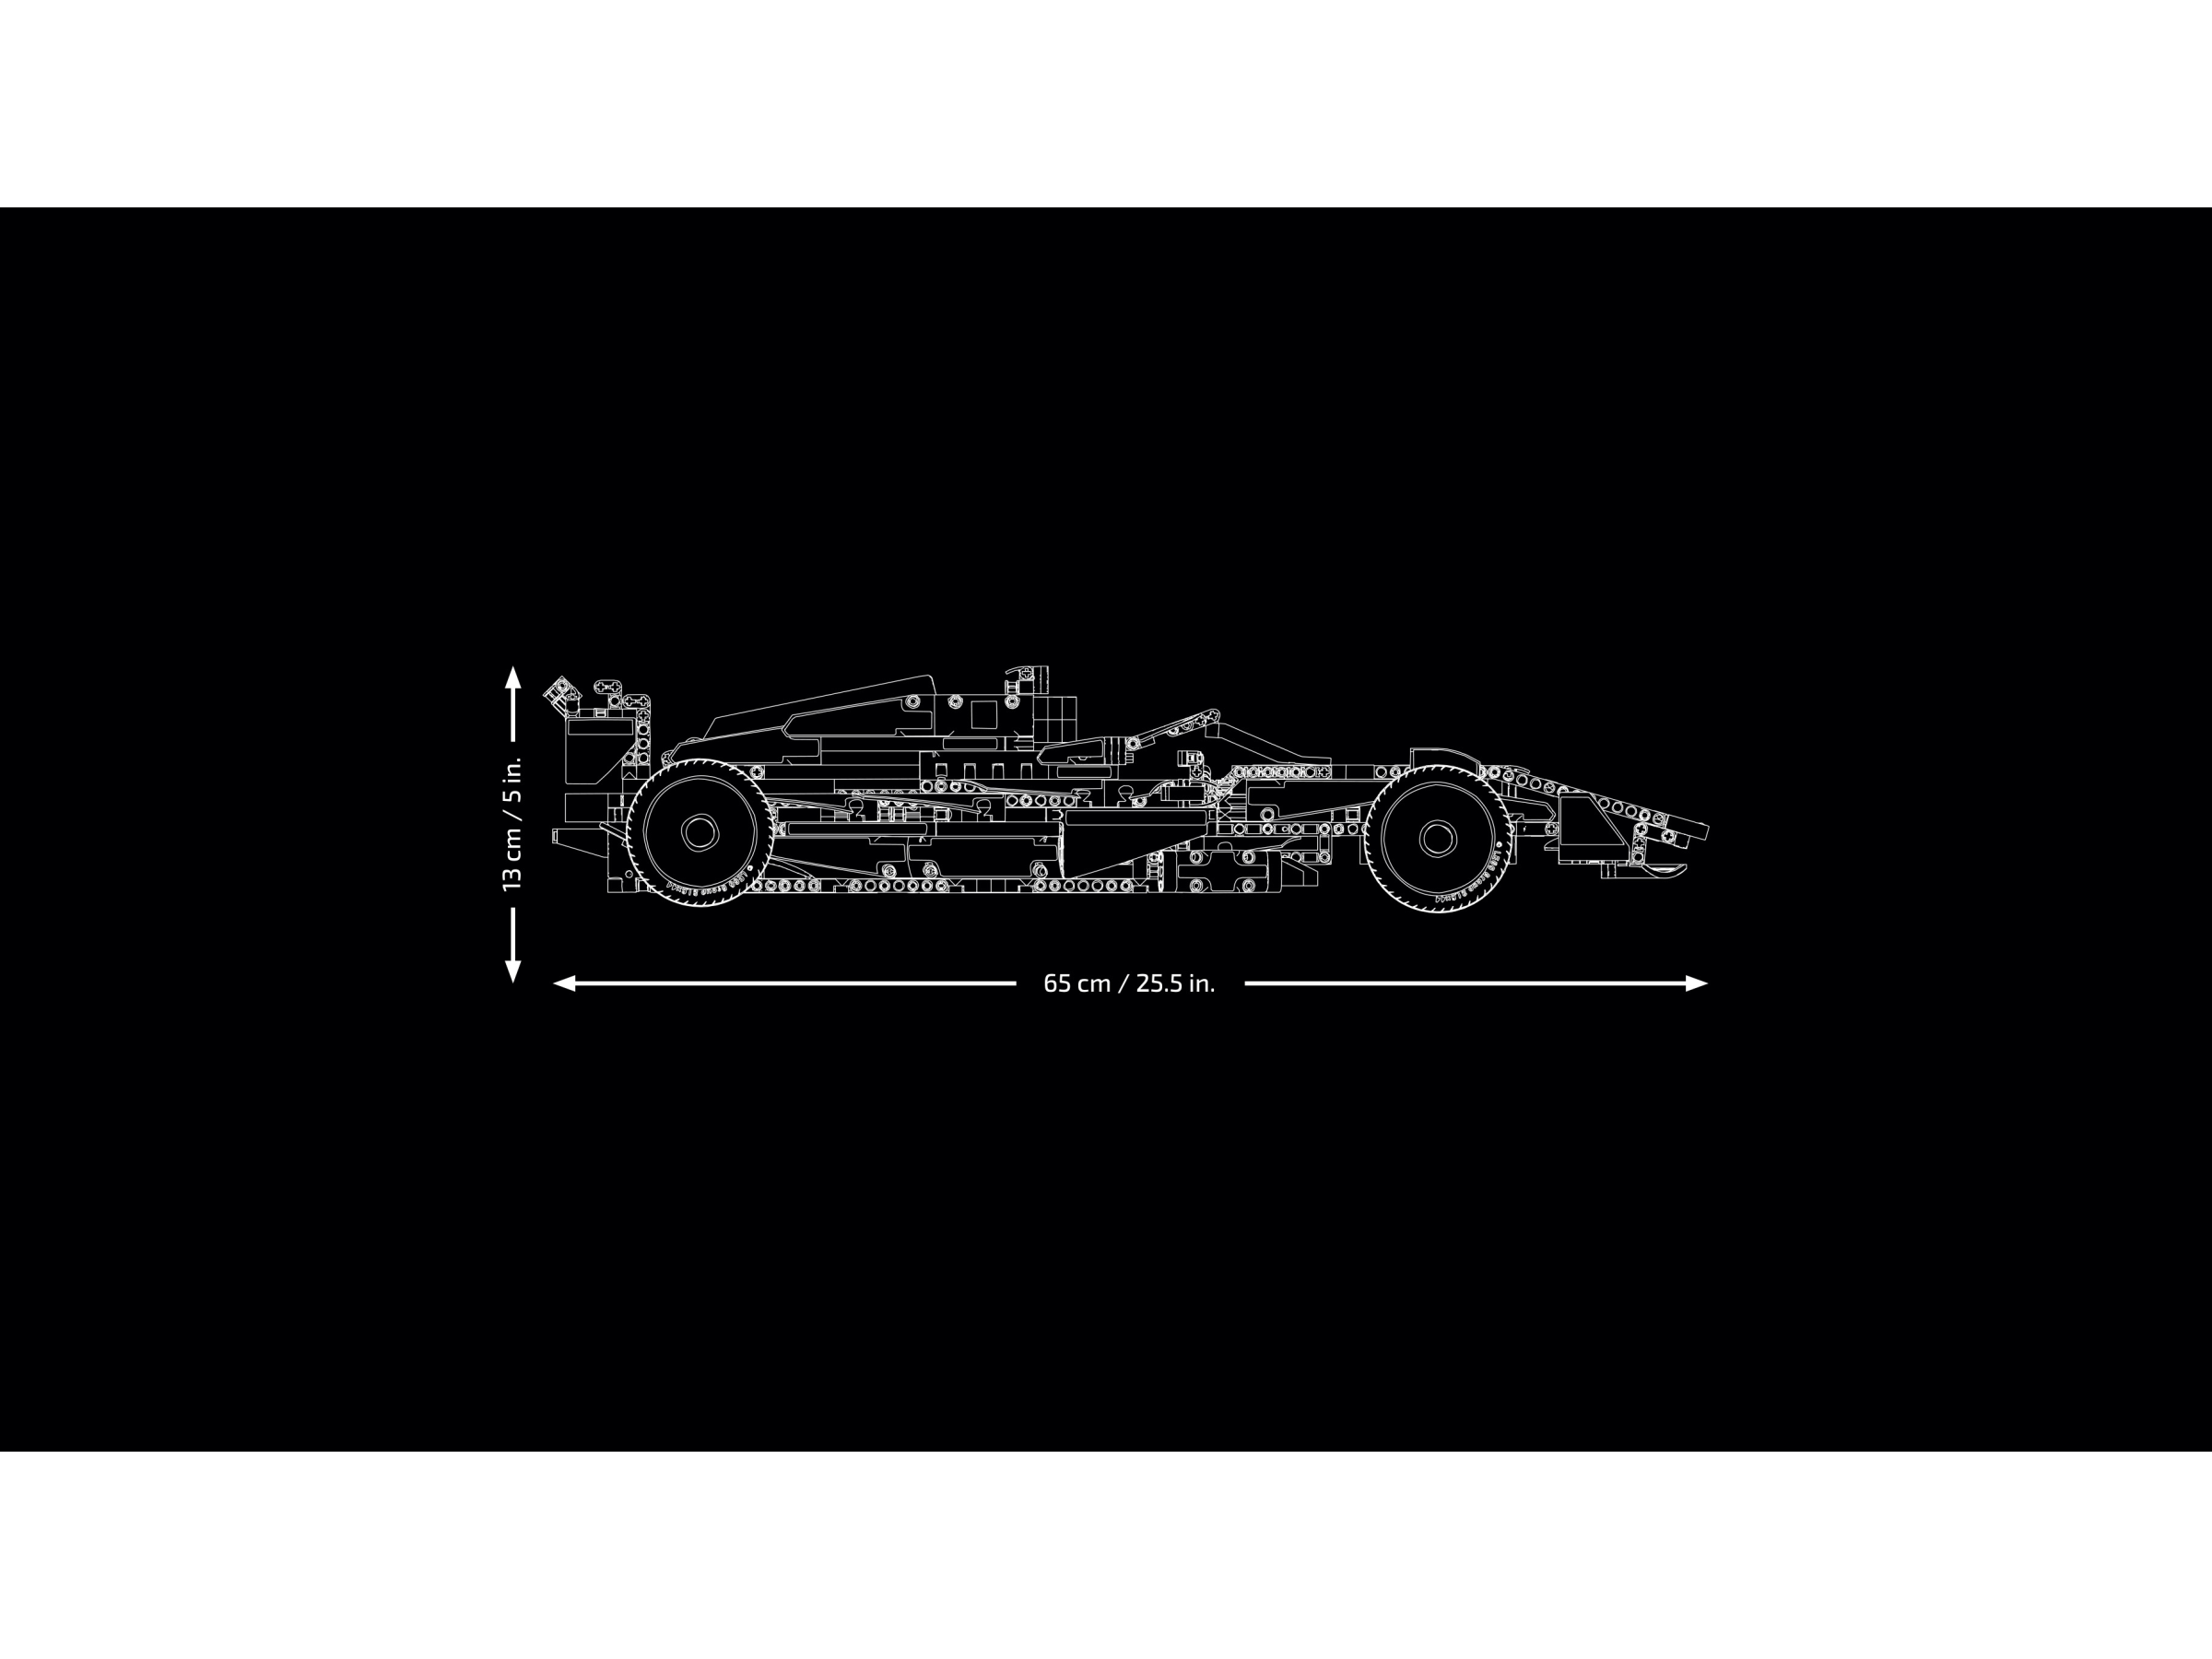 LEGO Technic 42141 pas cher, La voiture de course McLaren Formula 1